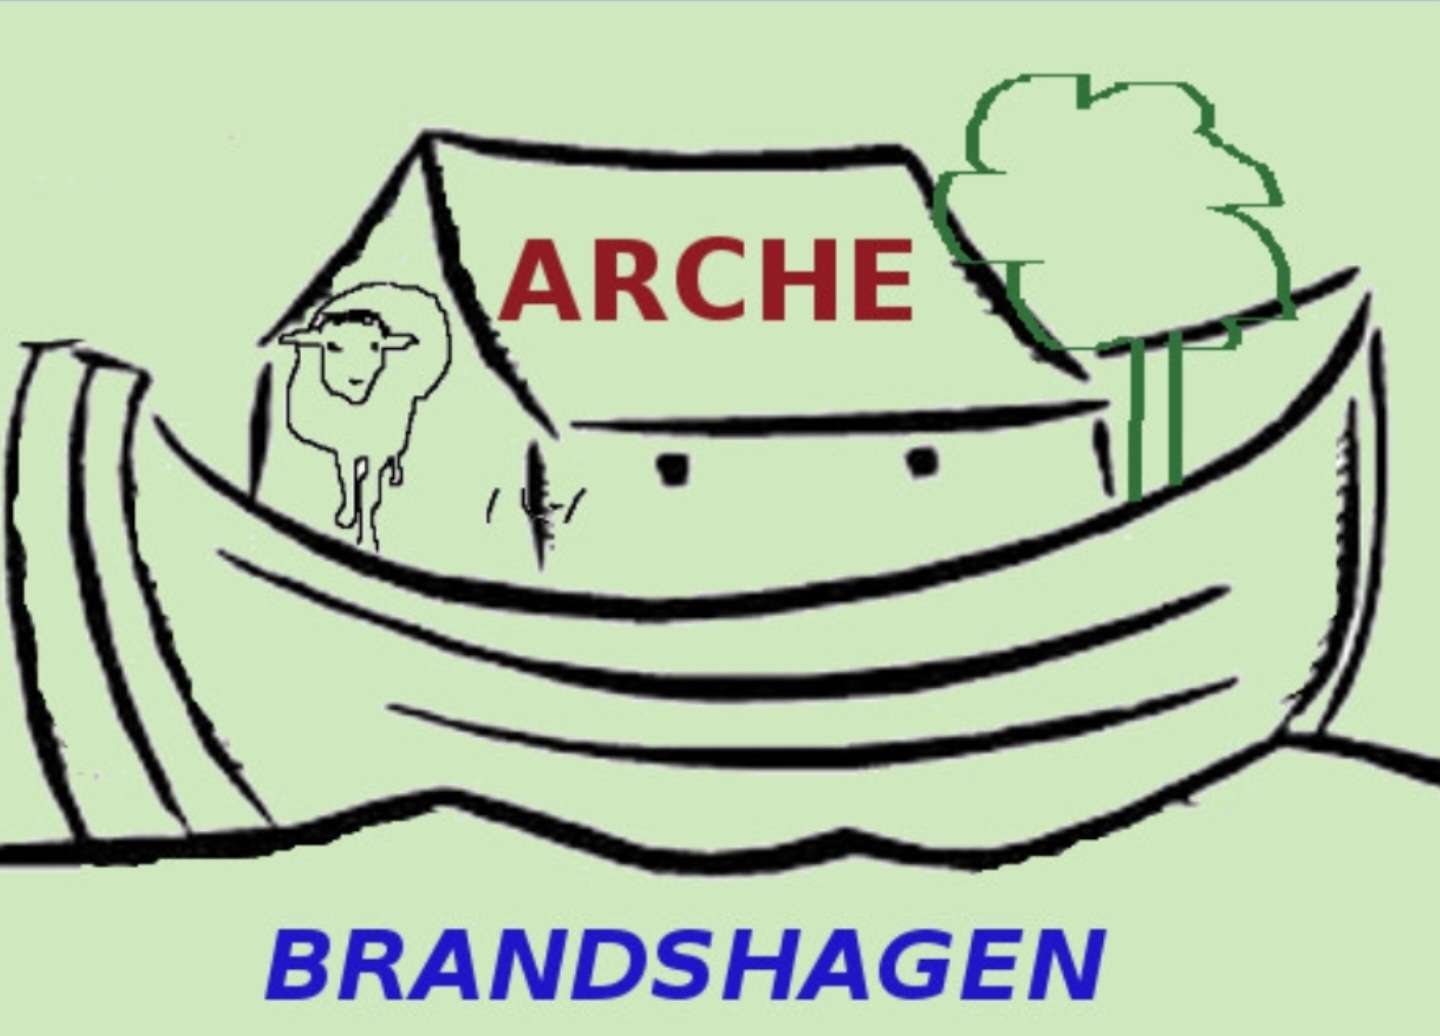 Arche Brandshagen